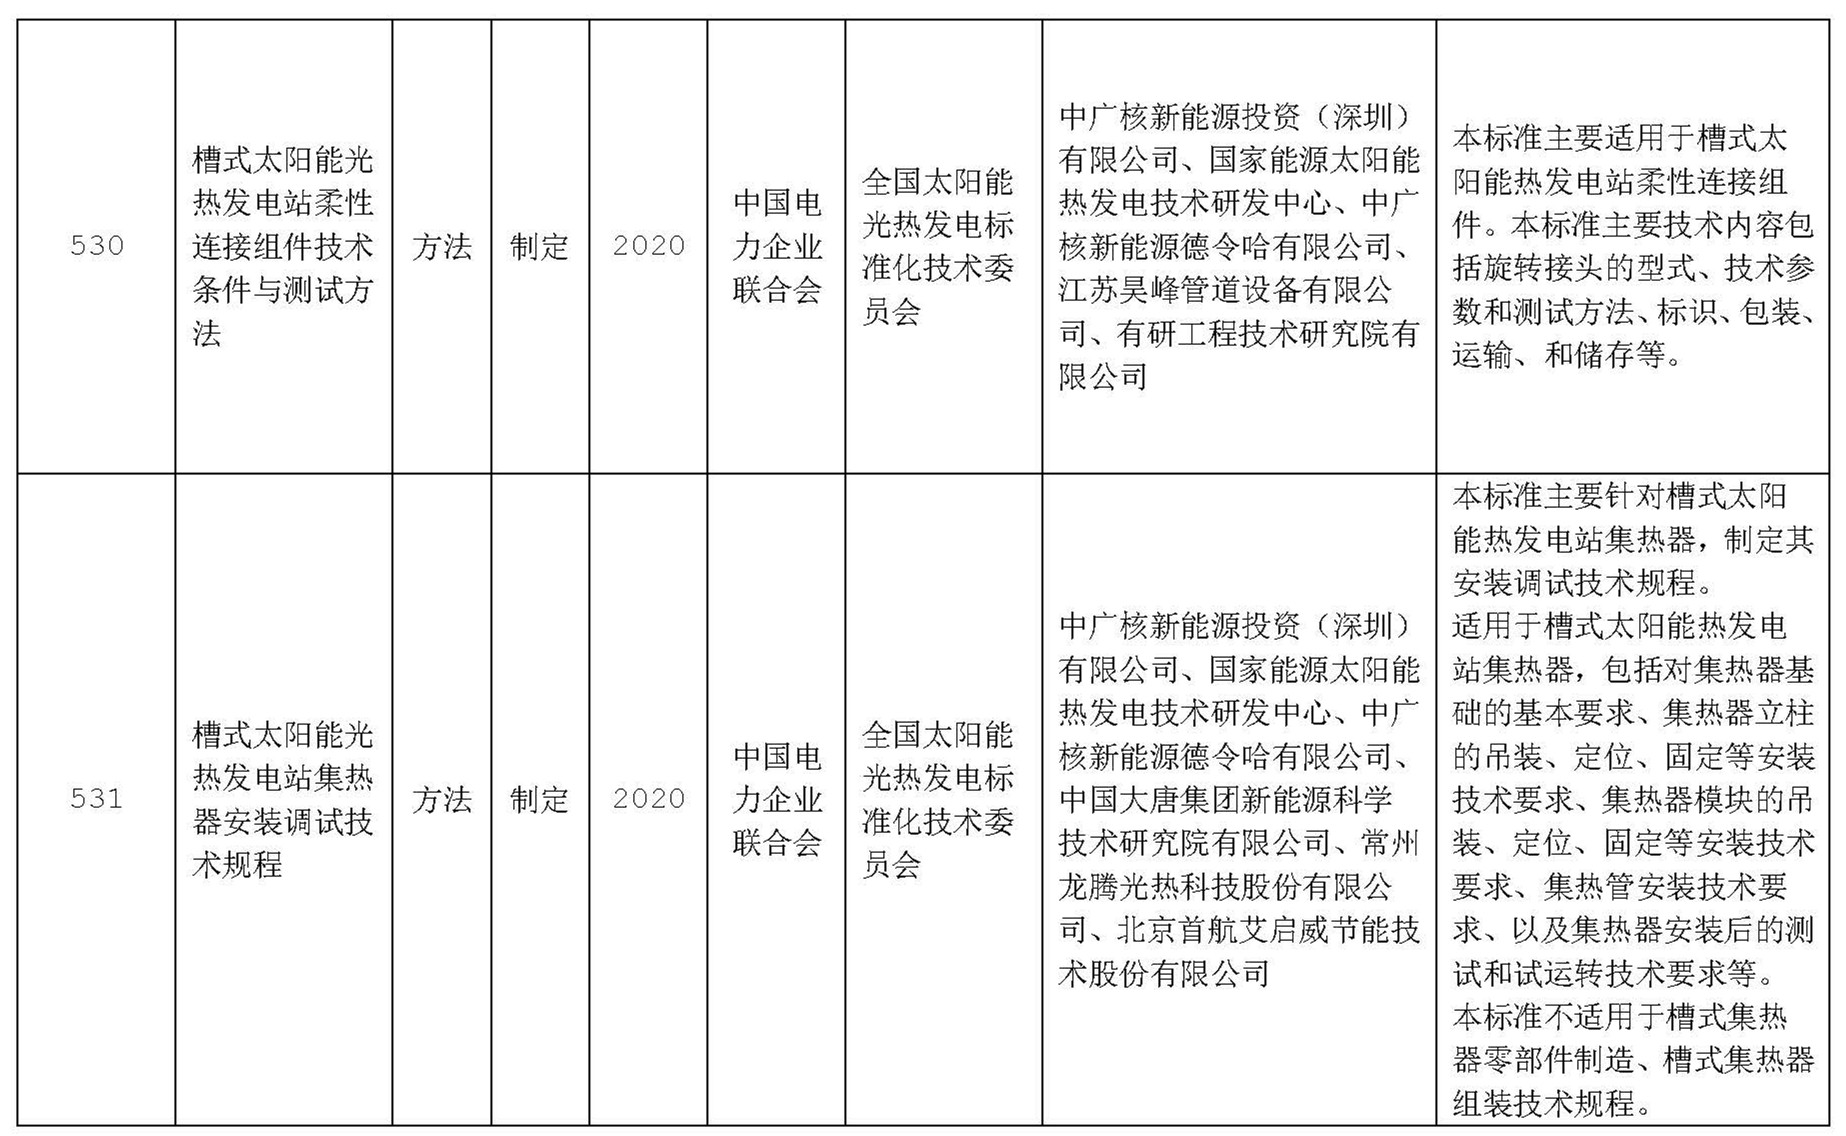 北京天瑞星光热技术有限公司,北京首航艾启威节能技术股份有限公司